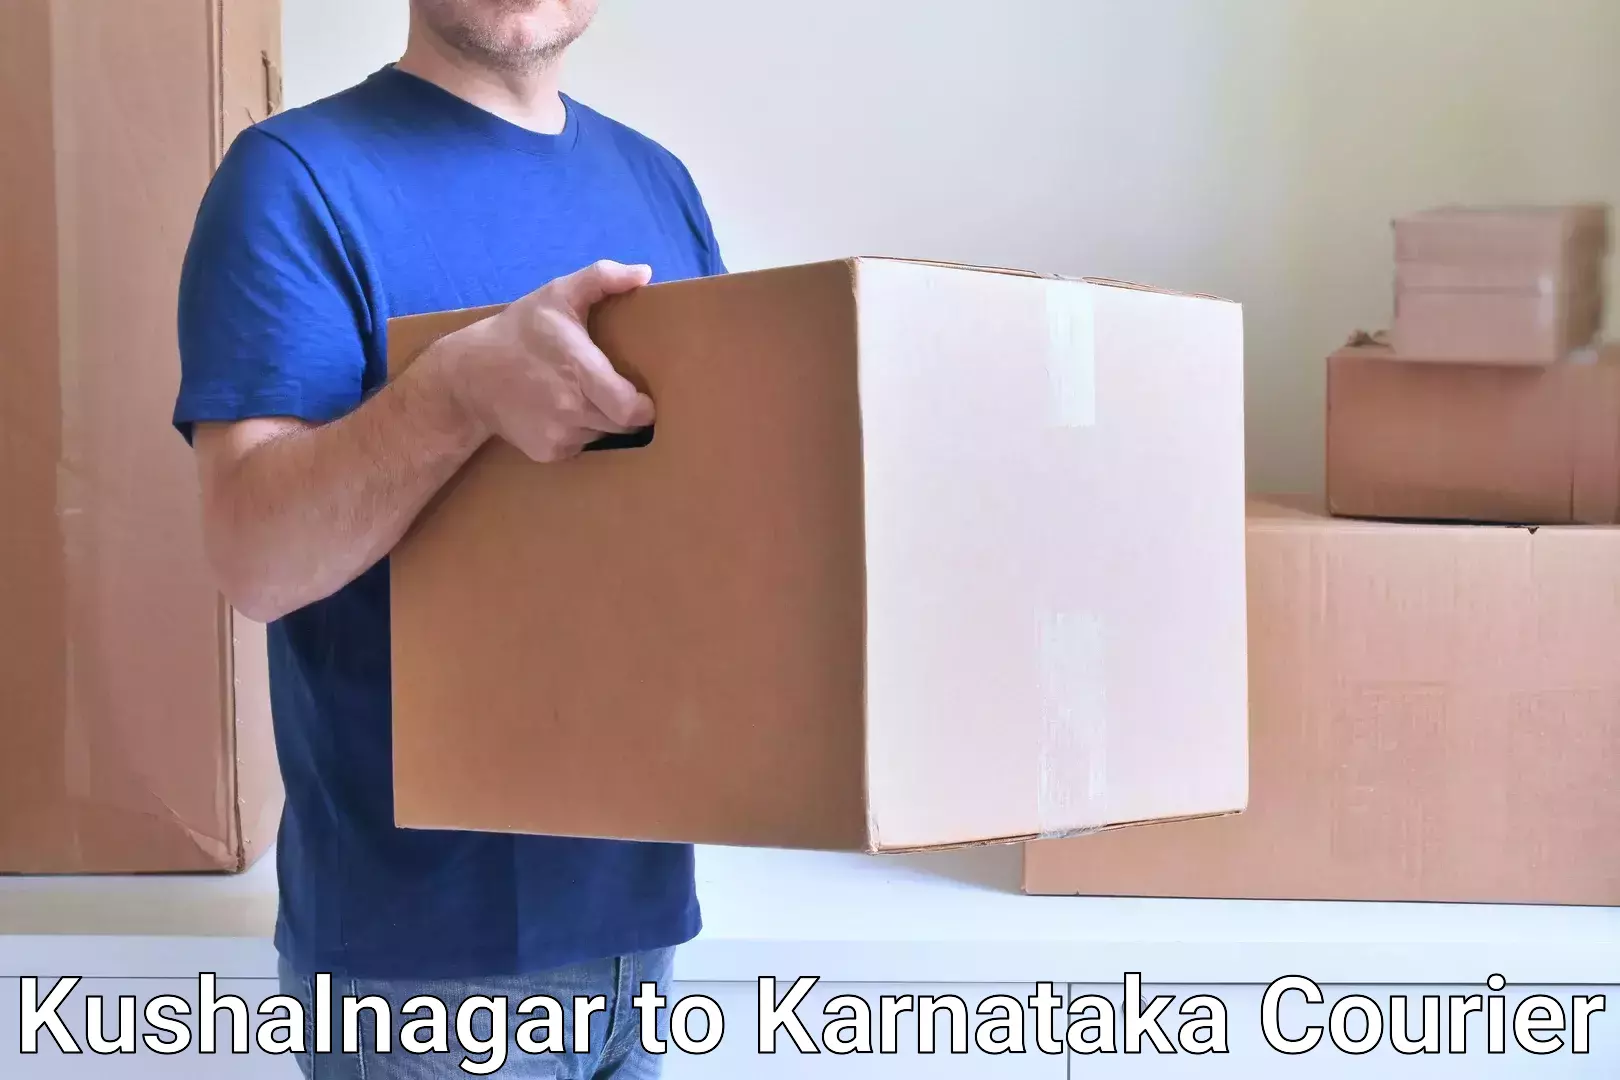 High-speed parcel service Kushalnagar to Aurad